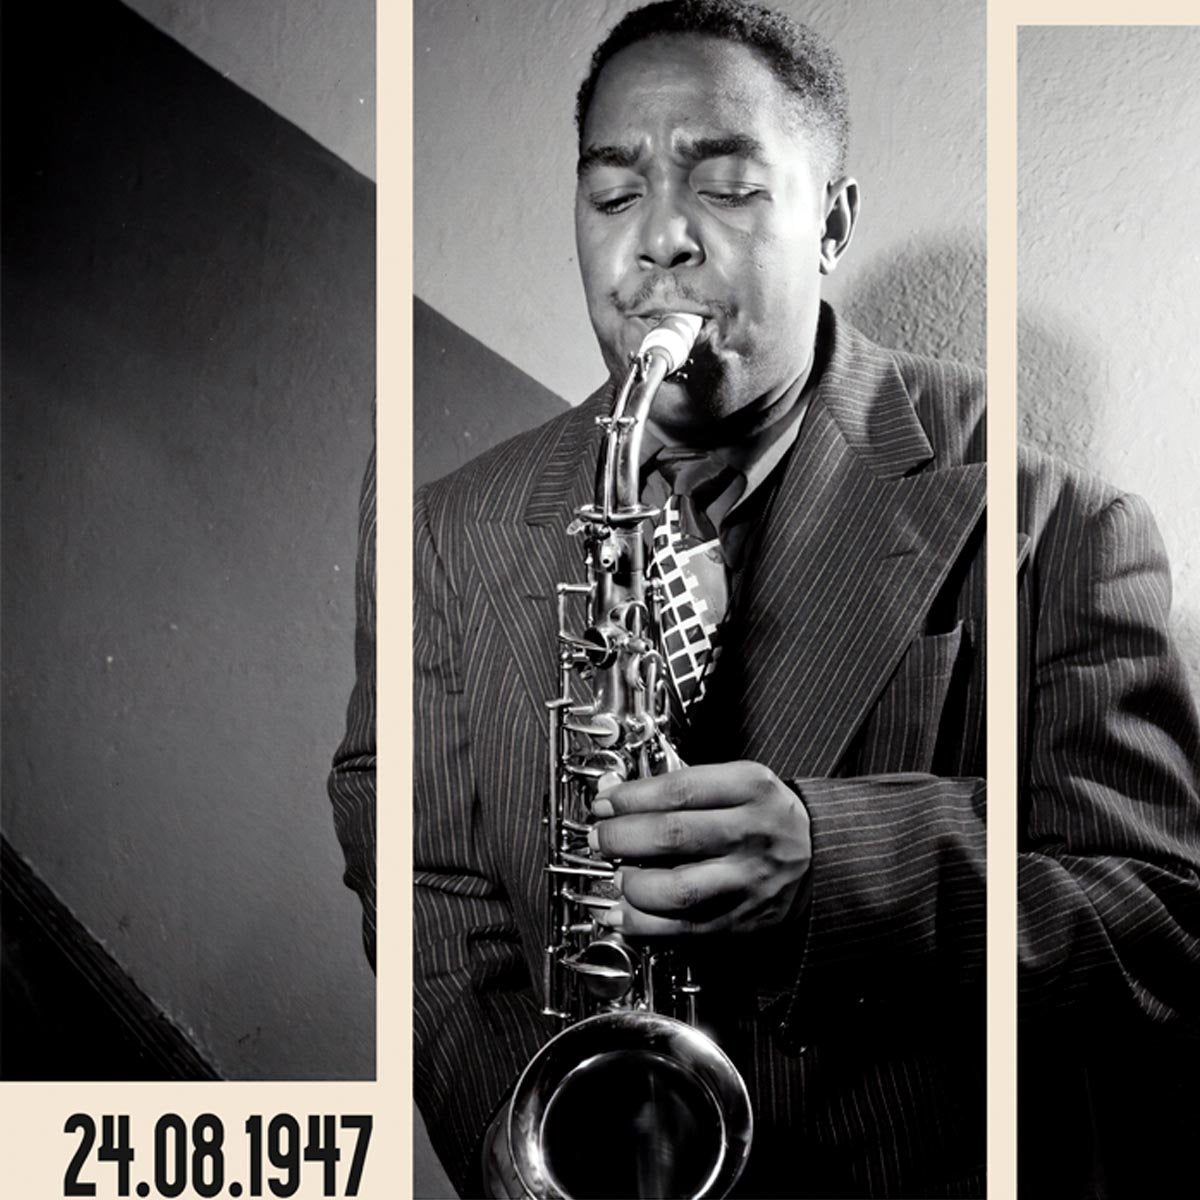 Charlie Parker Jazz Concert Poster